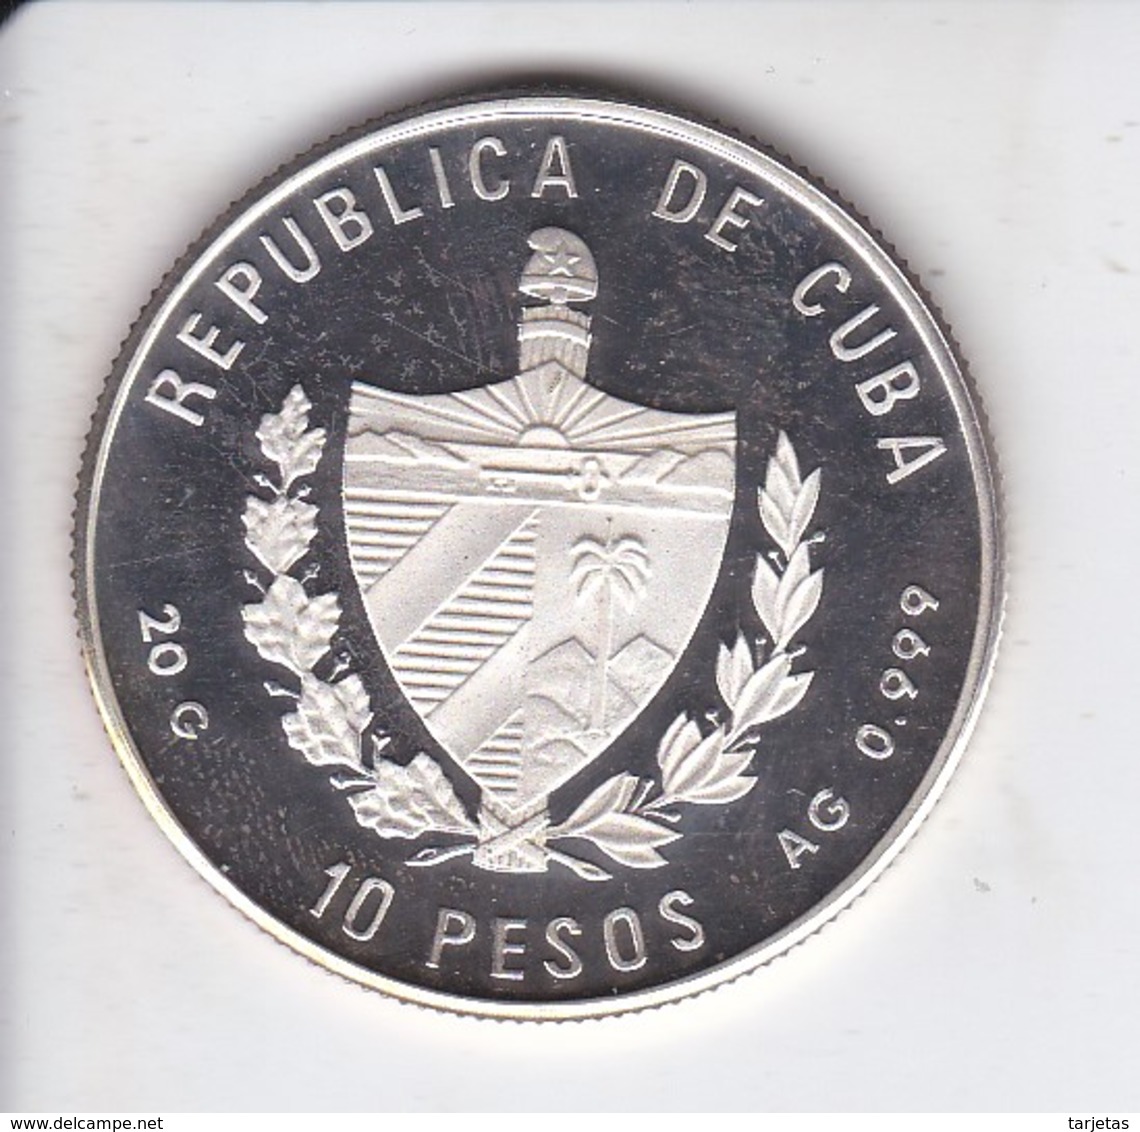 MONEDA DE PLATA DE CUBA DE 10 PESOS AÑO 1989 TIERRA-TIERRA (SILVER-ARGENT) BARCO-SHIP - Cuba